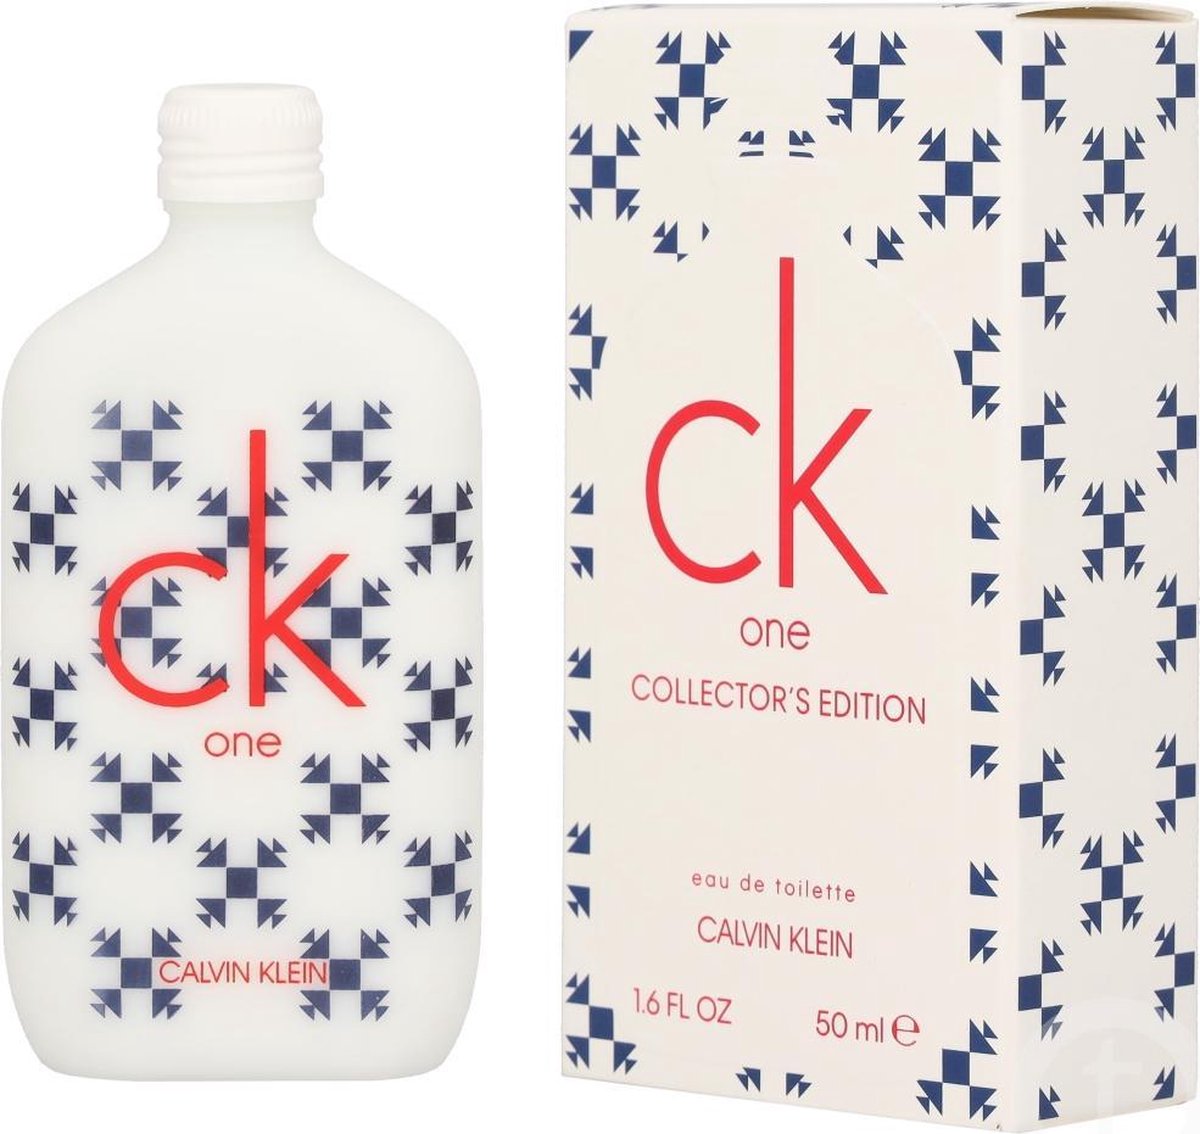 Calvin Klein CK One Collector's Edition 2019 eau de toilette 50 ml eau de  toilette | bol